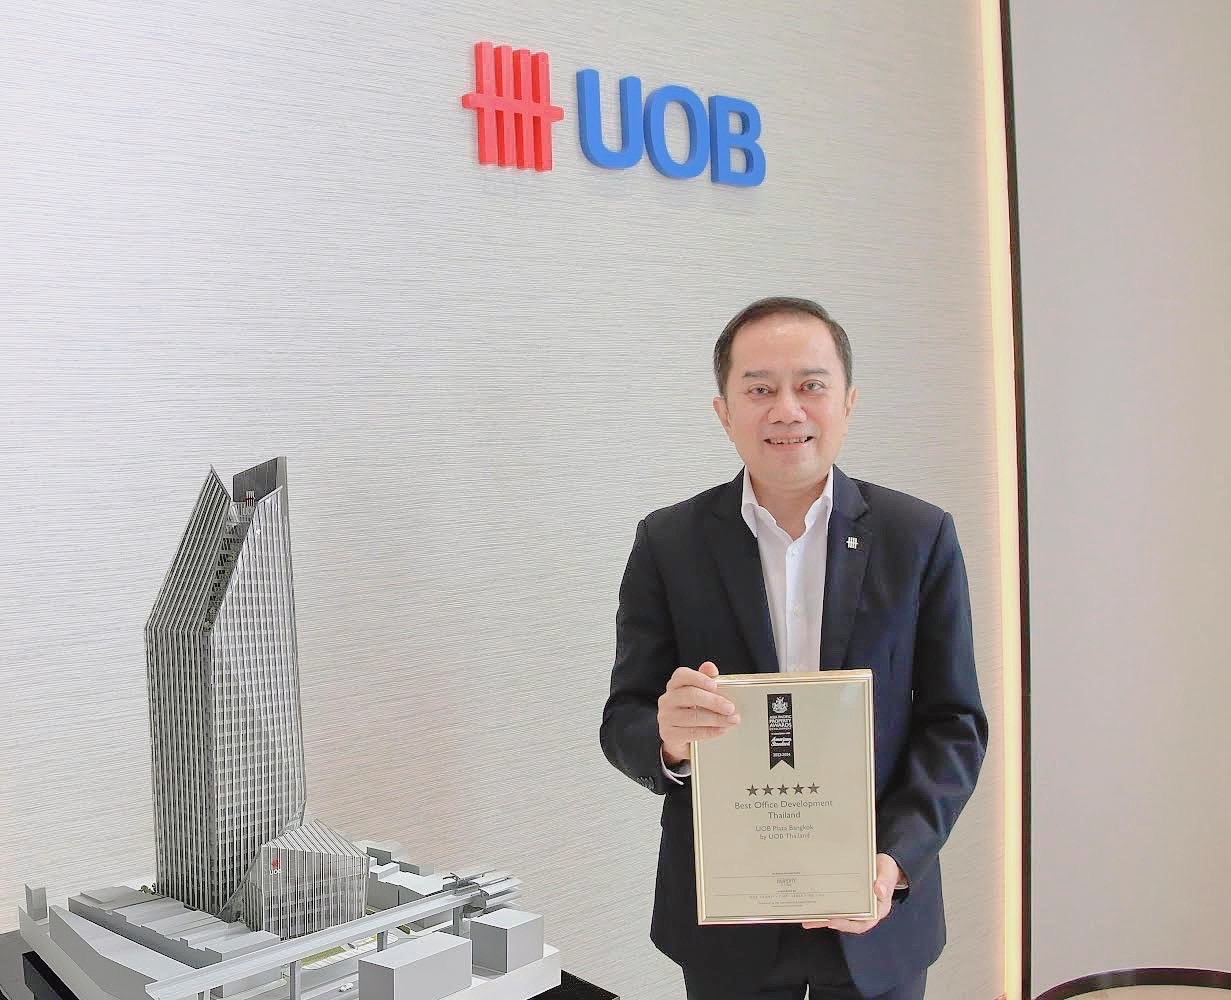 อาคารยูโอบี พลาซา กรุงเทพ คว้ารางวัล Best Office Development Thailand จาก Asia Pacific Property Awards 2023-2024